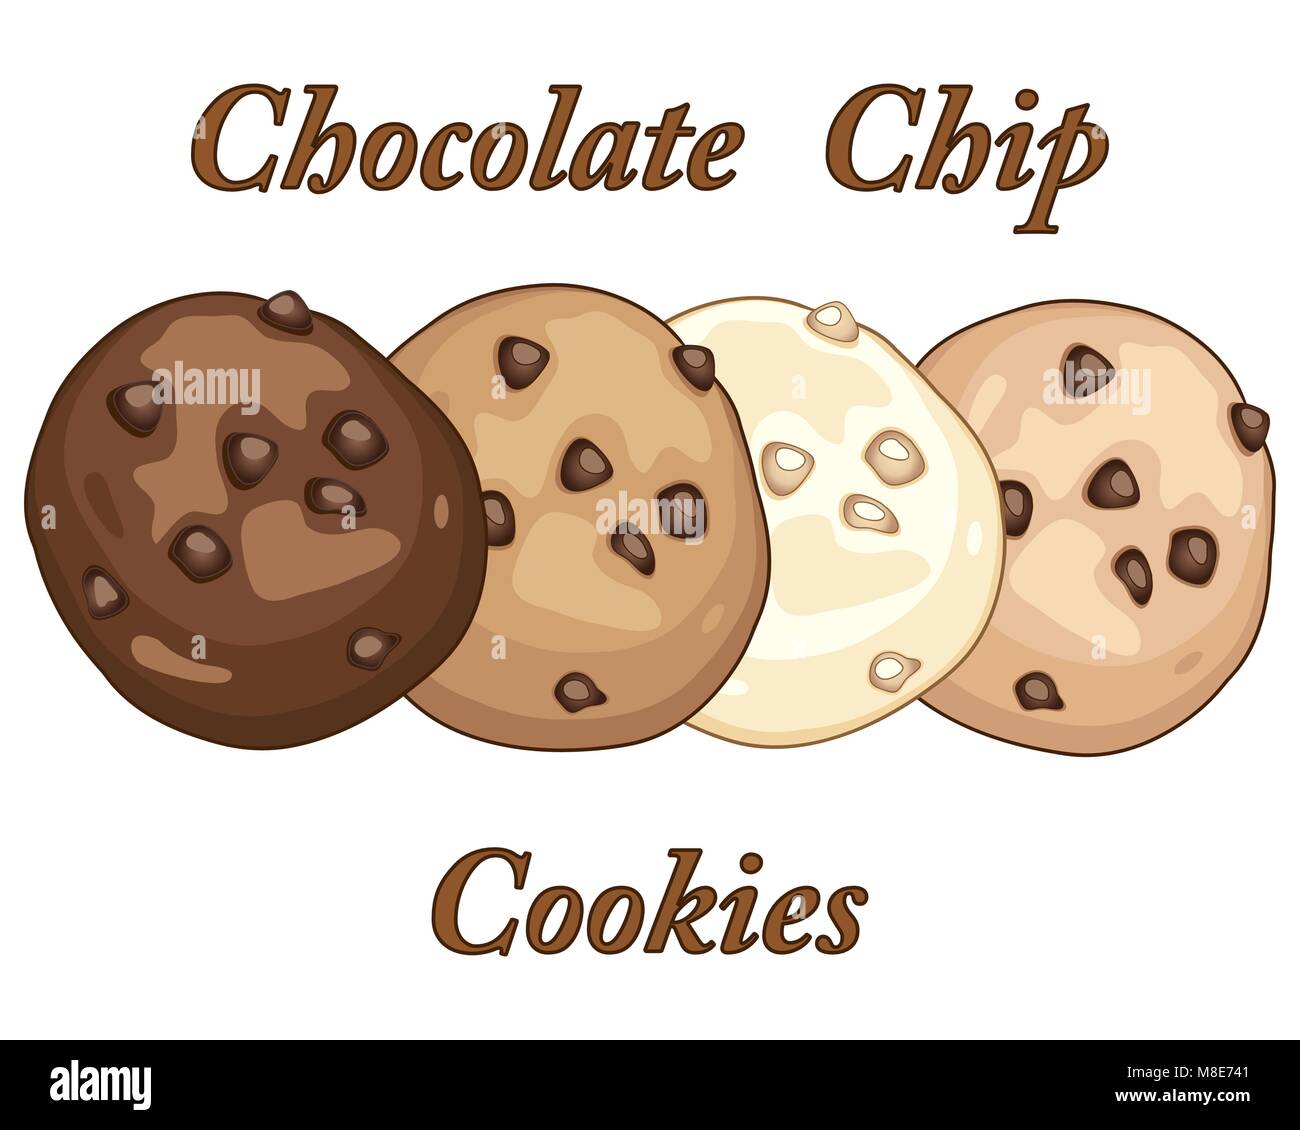 Un vecteur illustration en eps 10 format de quatre différents cookies aux pépites de chocolat sur un fond blanc avec des caractères dans un format publicitaire Illustration de Vecteur